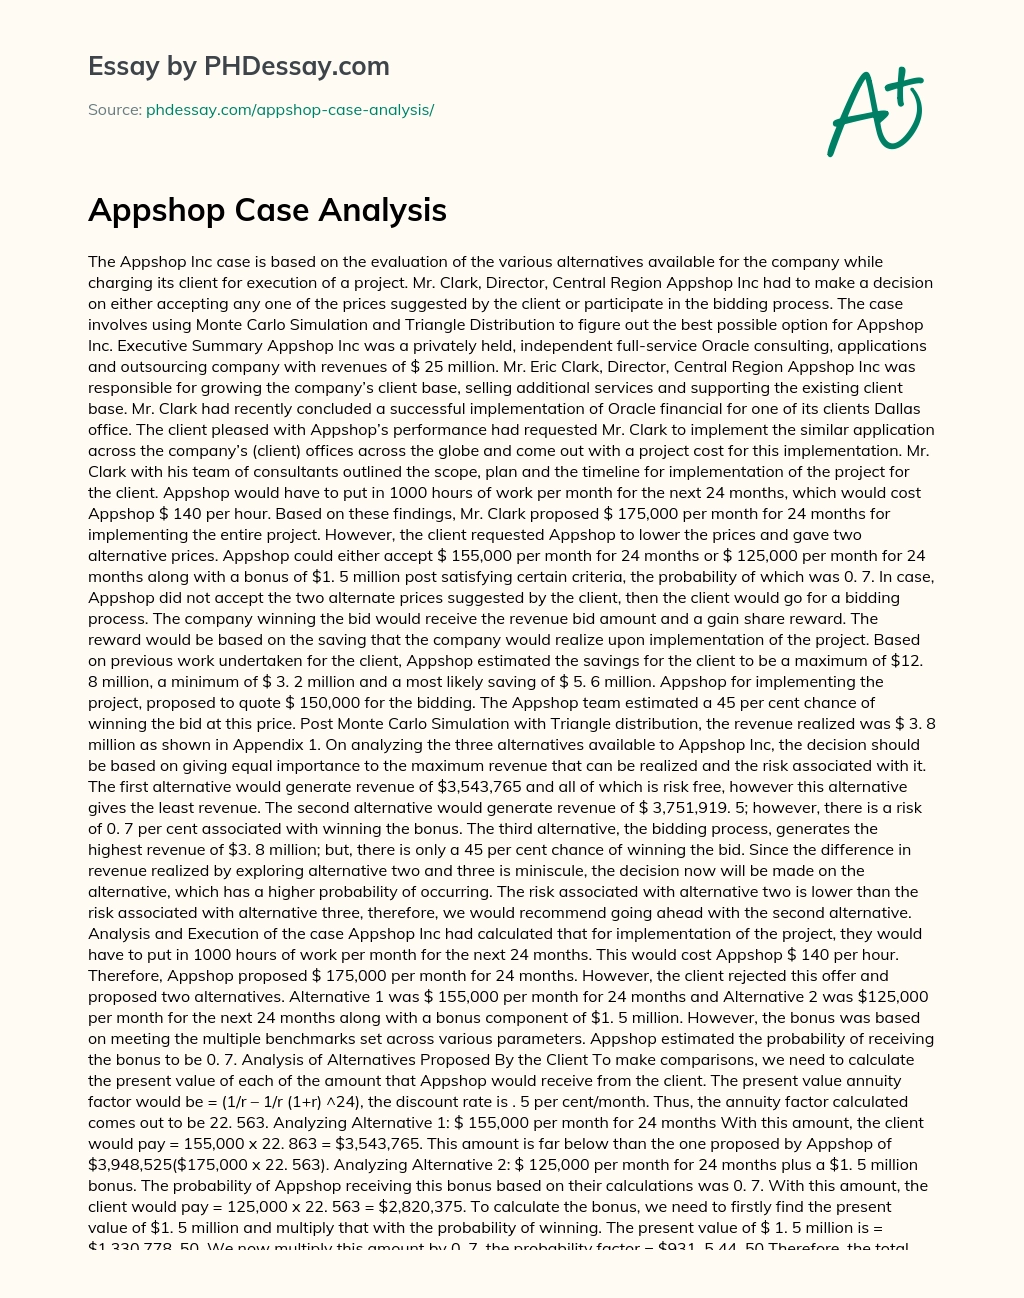 Appshop Case Analysis essay